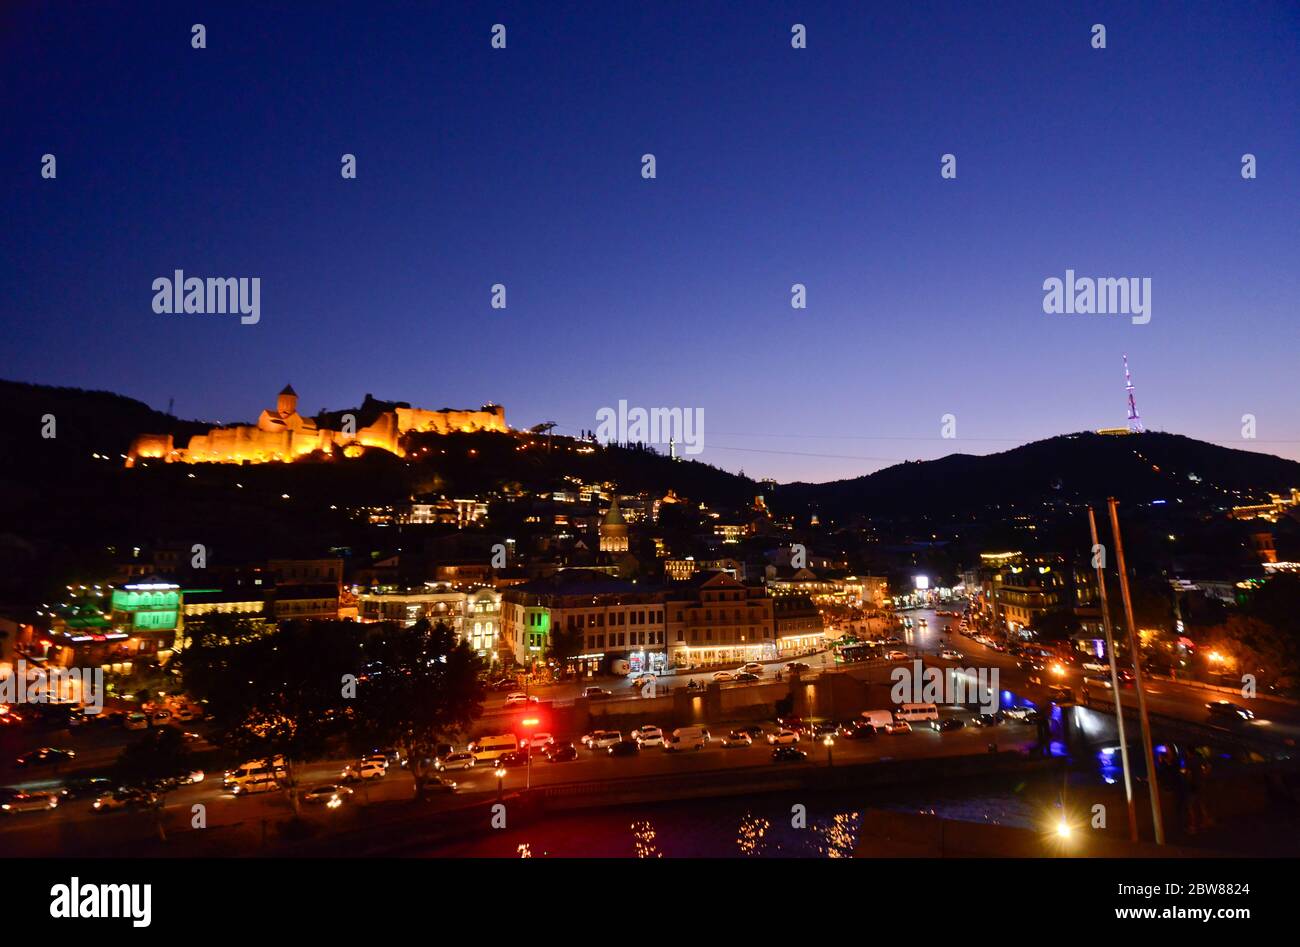 Tbilissi : vue panoramique en soirée / crépuscule, avec la forteresse de Narikala, la rivière Kura, la colline de Sololaki, le mont Mtatsminda. République de Géorgie Banque D'Images